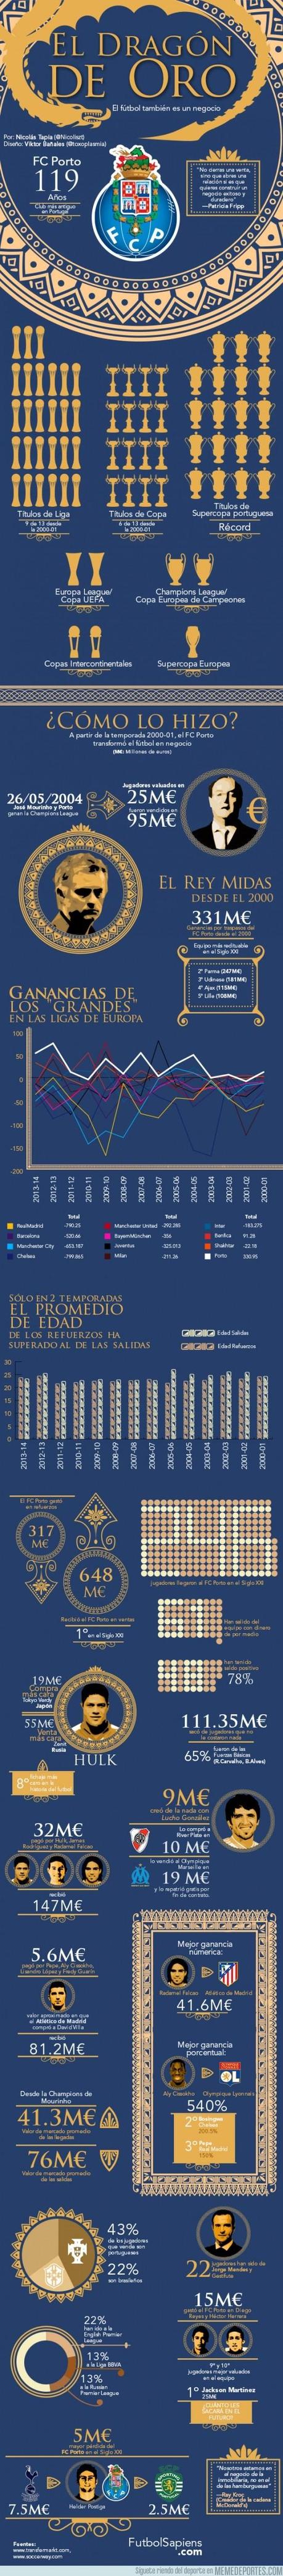 Porto Infografica luglio 2013 Futbolfinanzas Dieci anni del FC Porto in infografica ... tante risposte